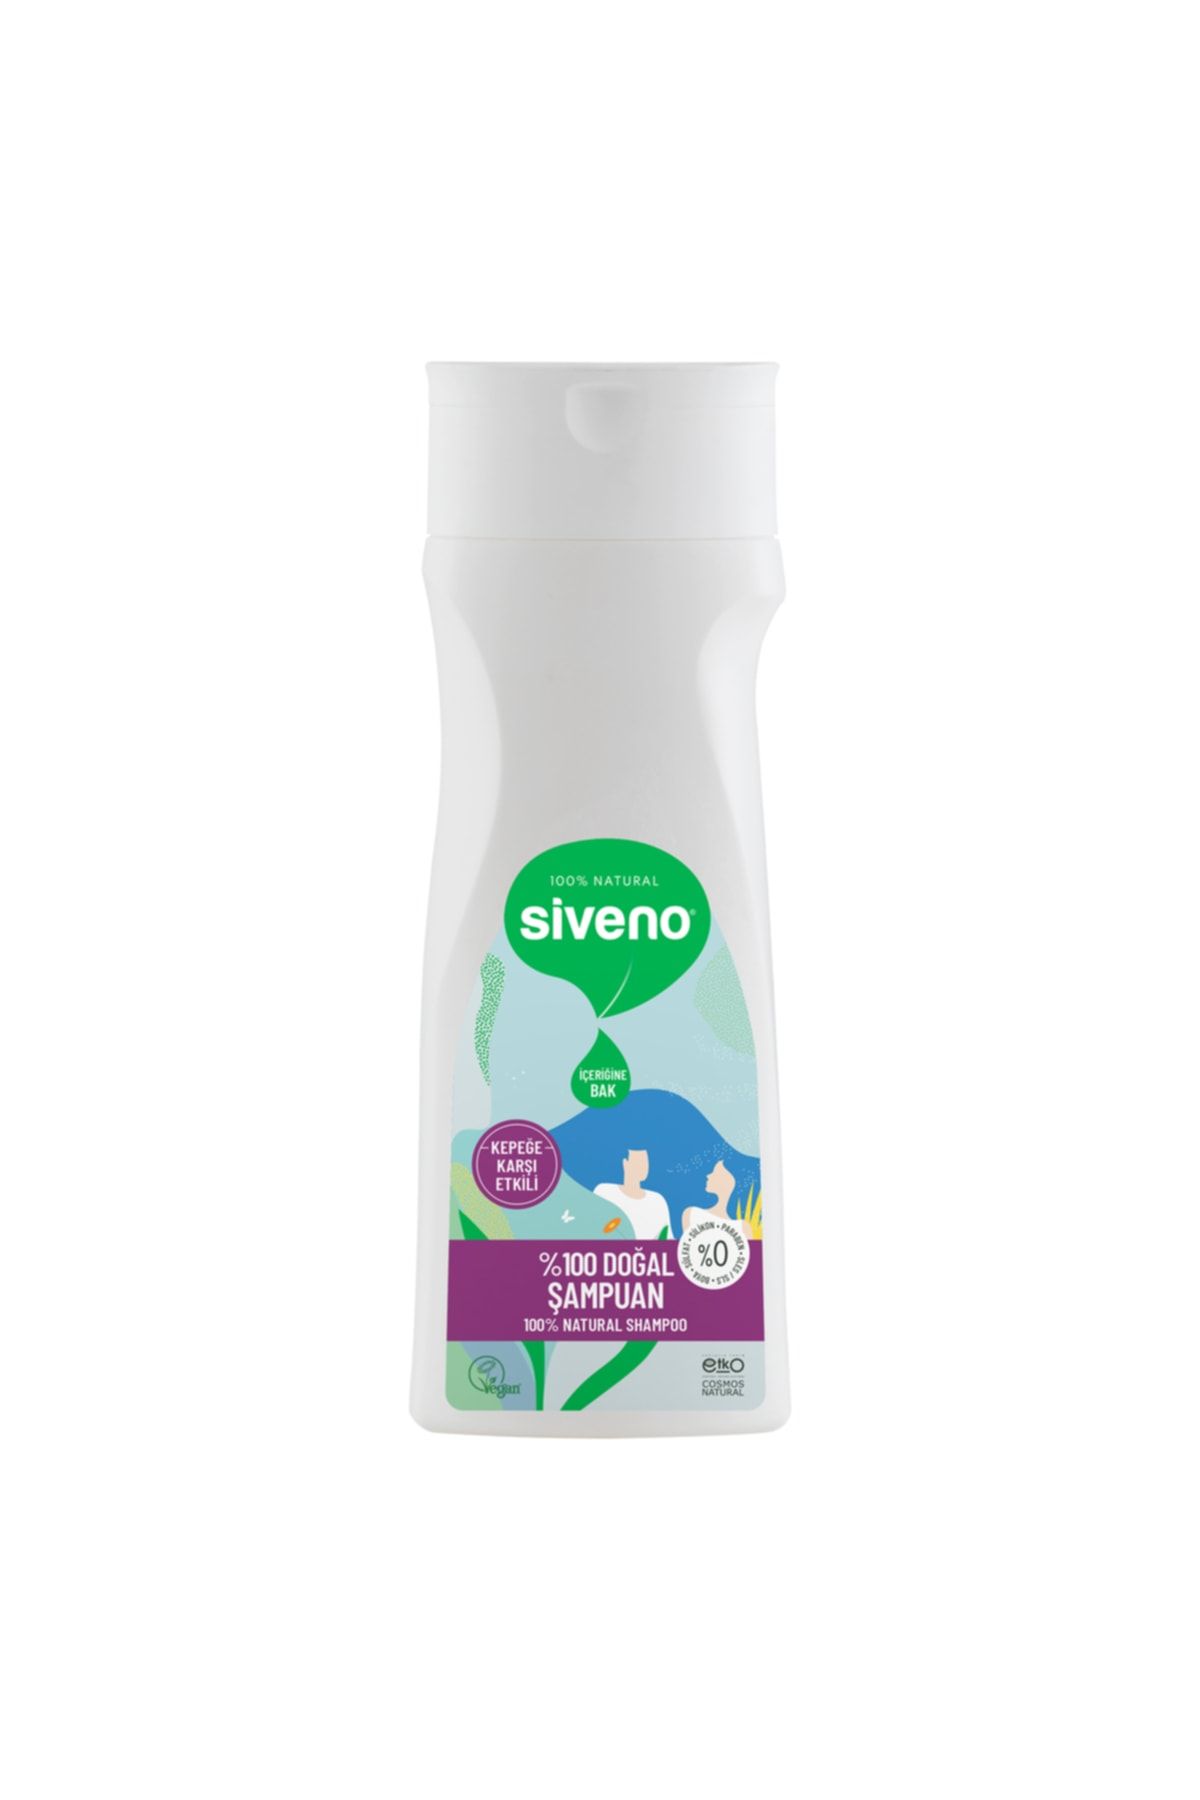 Siveno %100 Doğal Kepeğe Karşı Etkili Şampuan Günlük Bakım Yağlı Saçlar Çay Ağacı Keklik Üzümü Vegan 300 ml